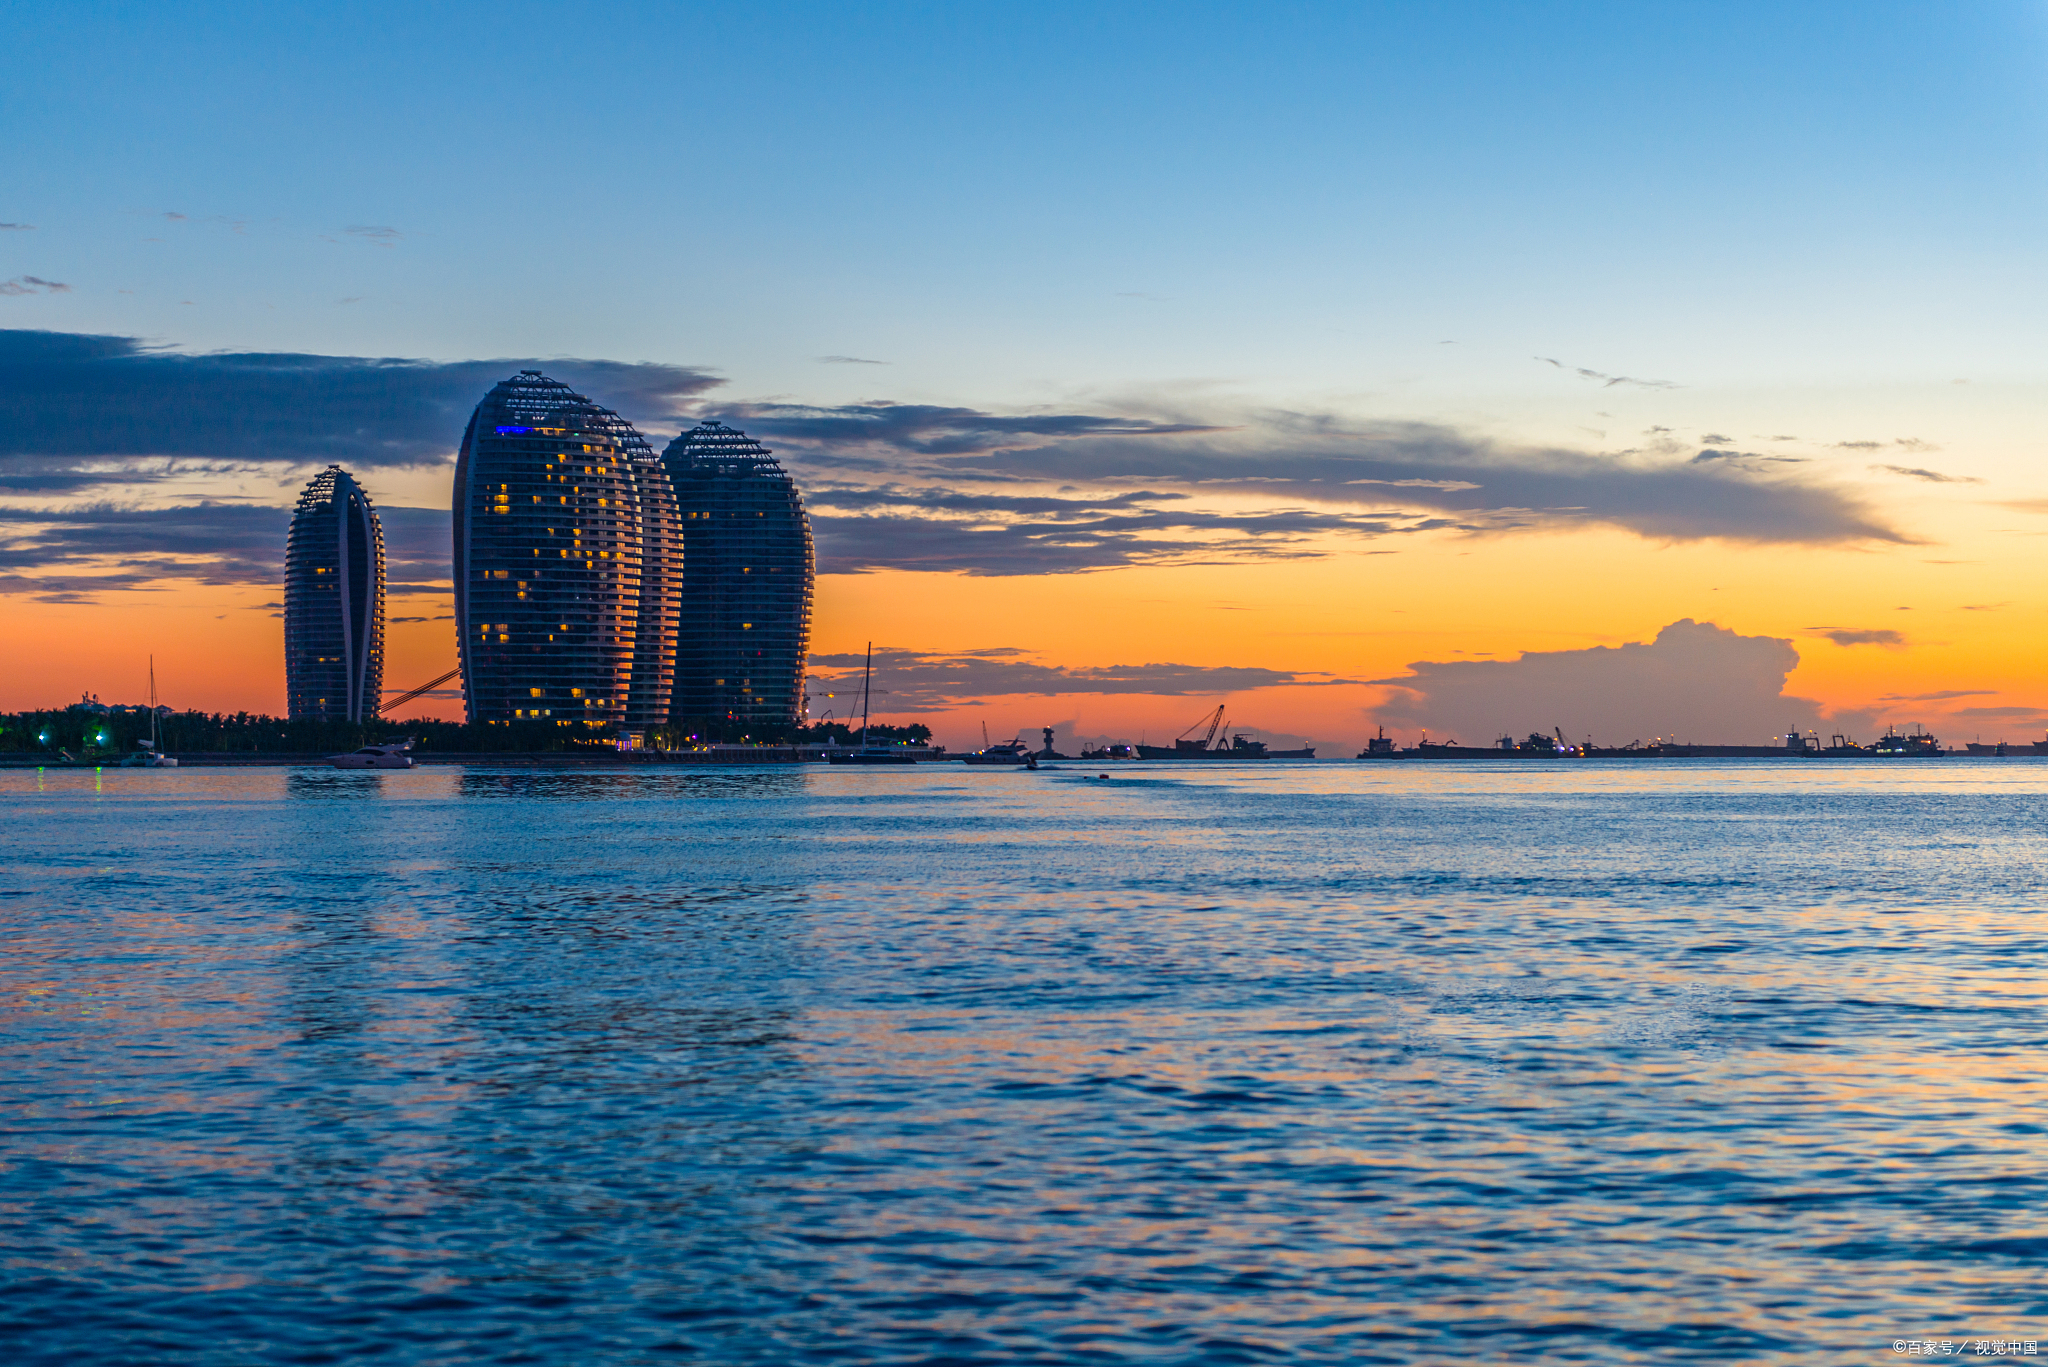 三亚湾是三亚市内最长的海湾,拥有许多著名的景点和活动